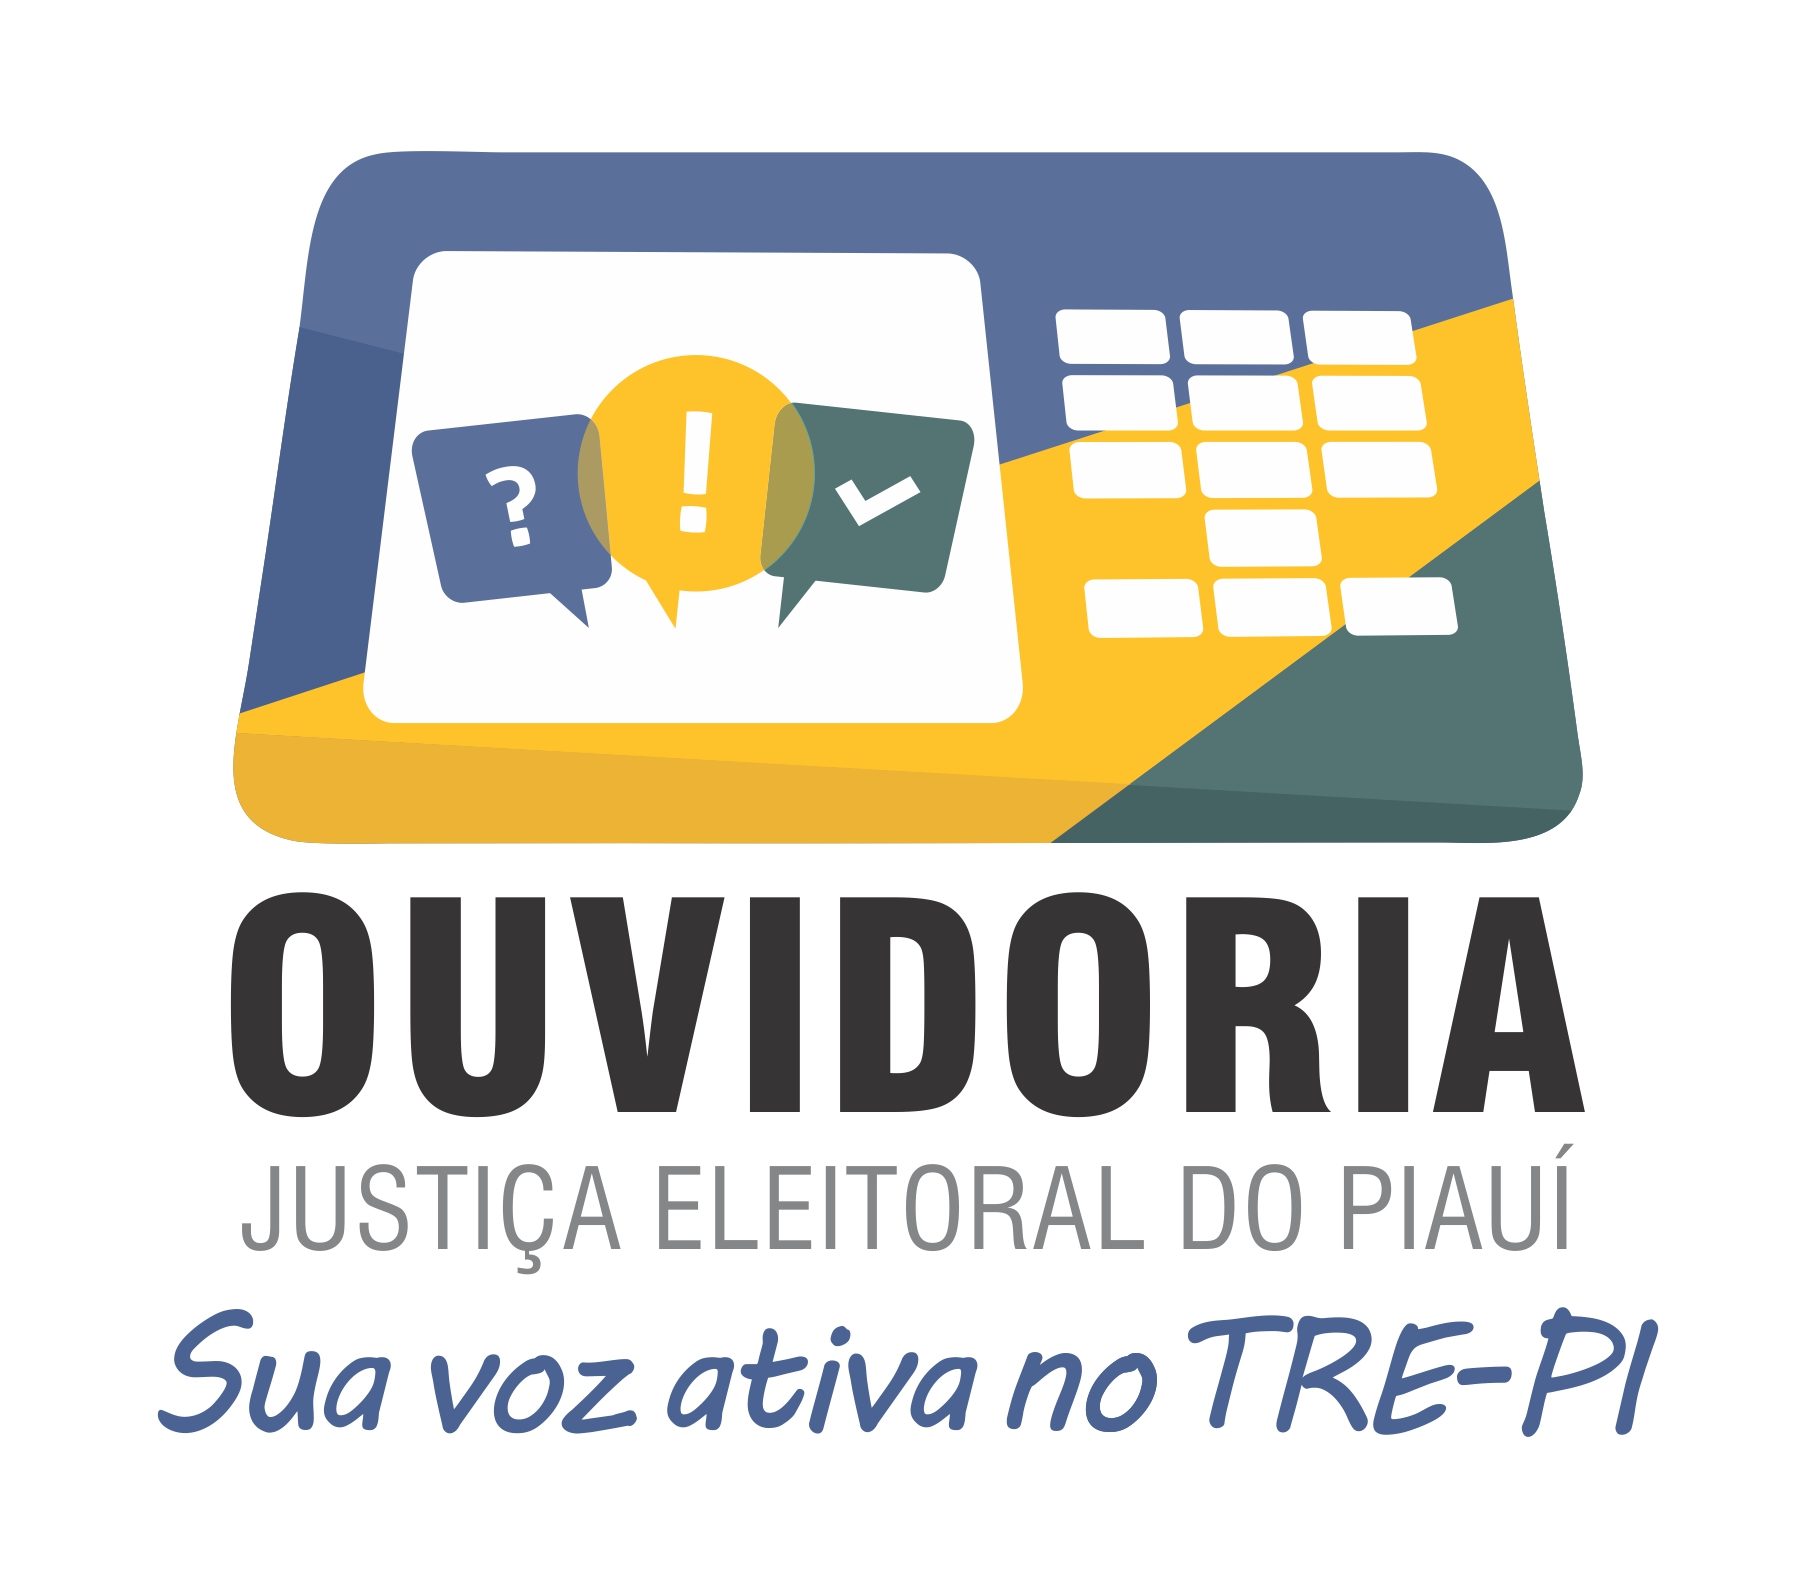 Ouvidoria da Justiça Eleitoral do Piauí